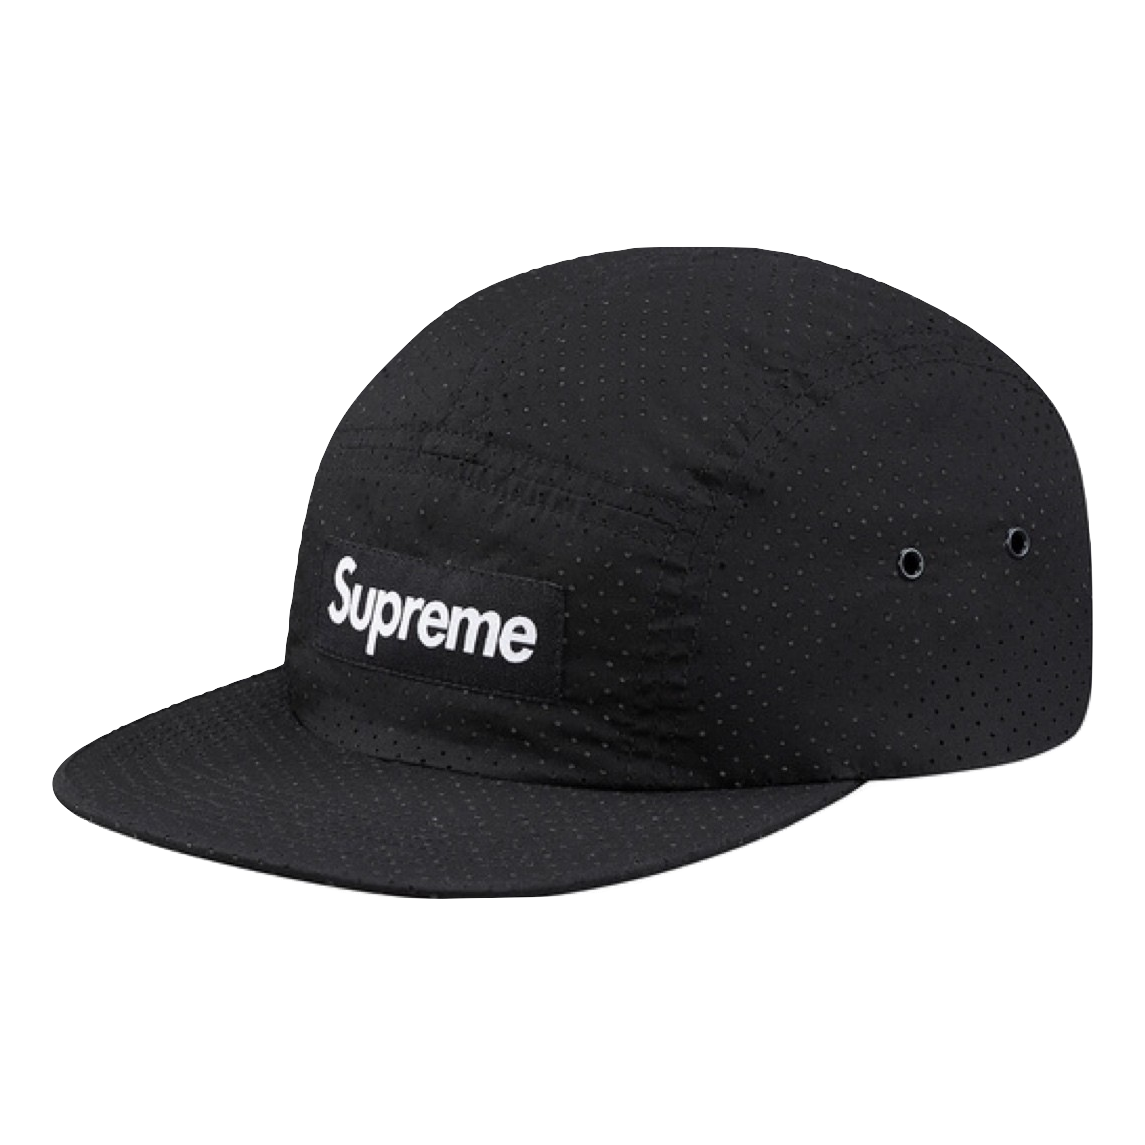 Supreme Perforated Camp Cap - Black